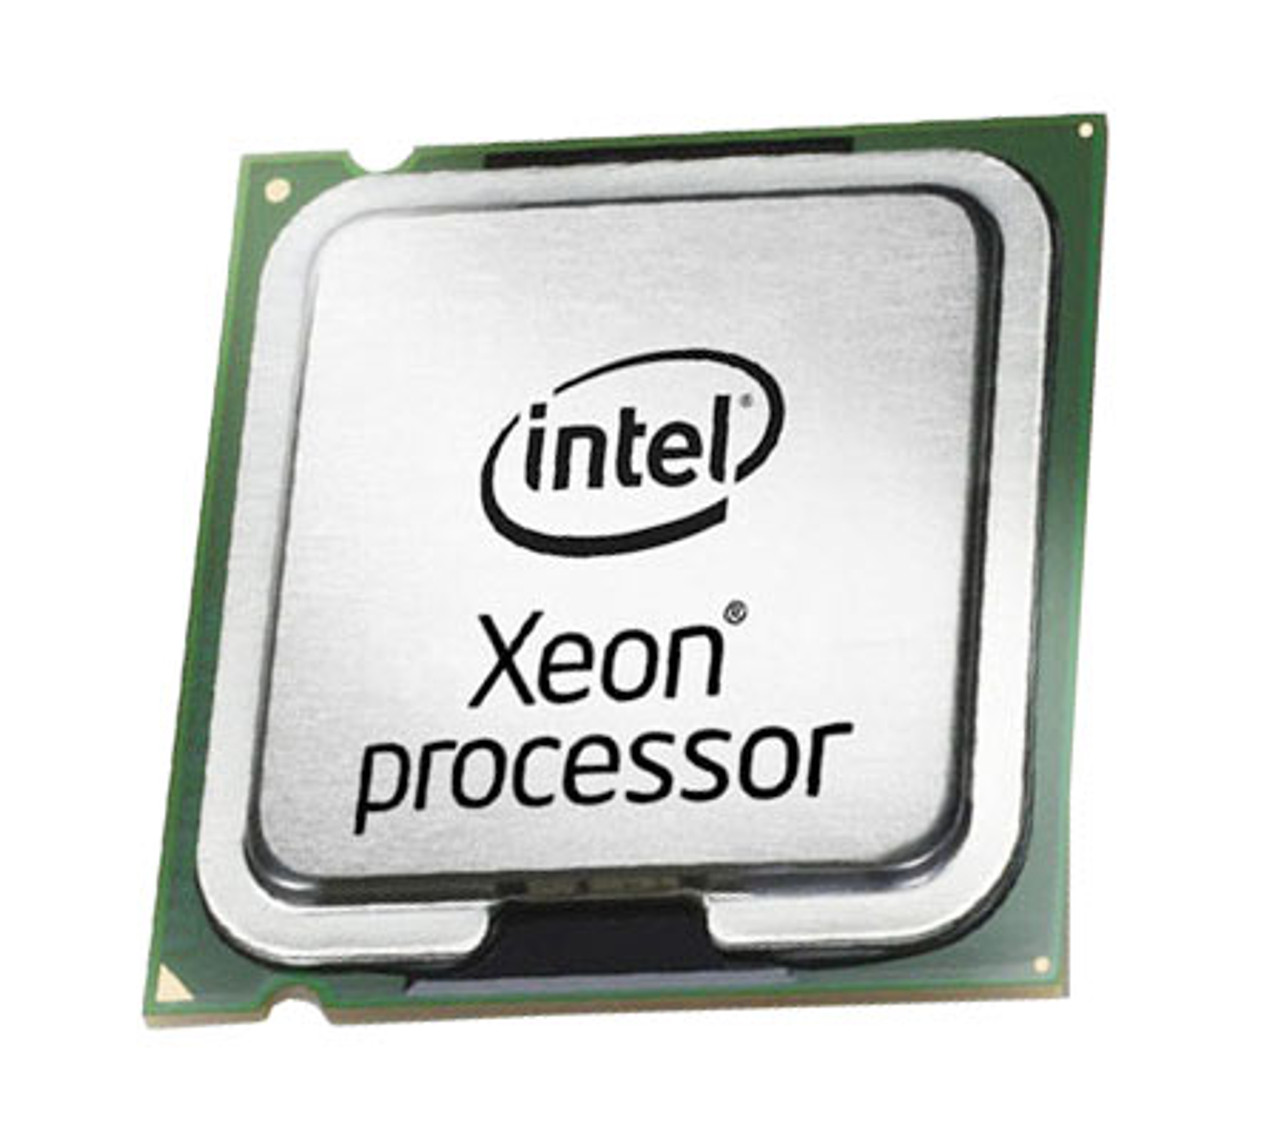 SLASA - Intel Xeon X5472 Quad Core 3.0GHz 12MB L2 Cache 1600MHz FSB Socket 771-Pin 45NM 120W Processor